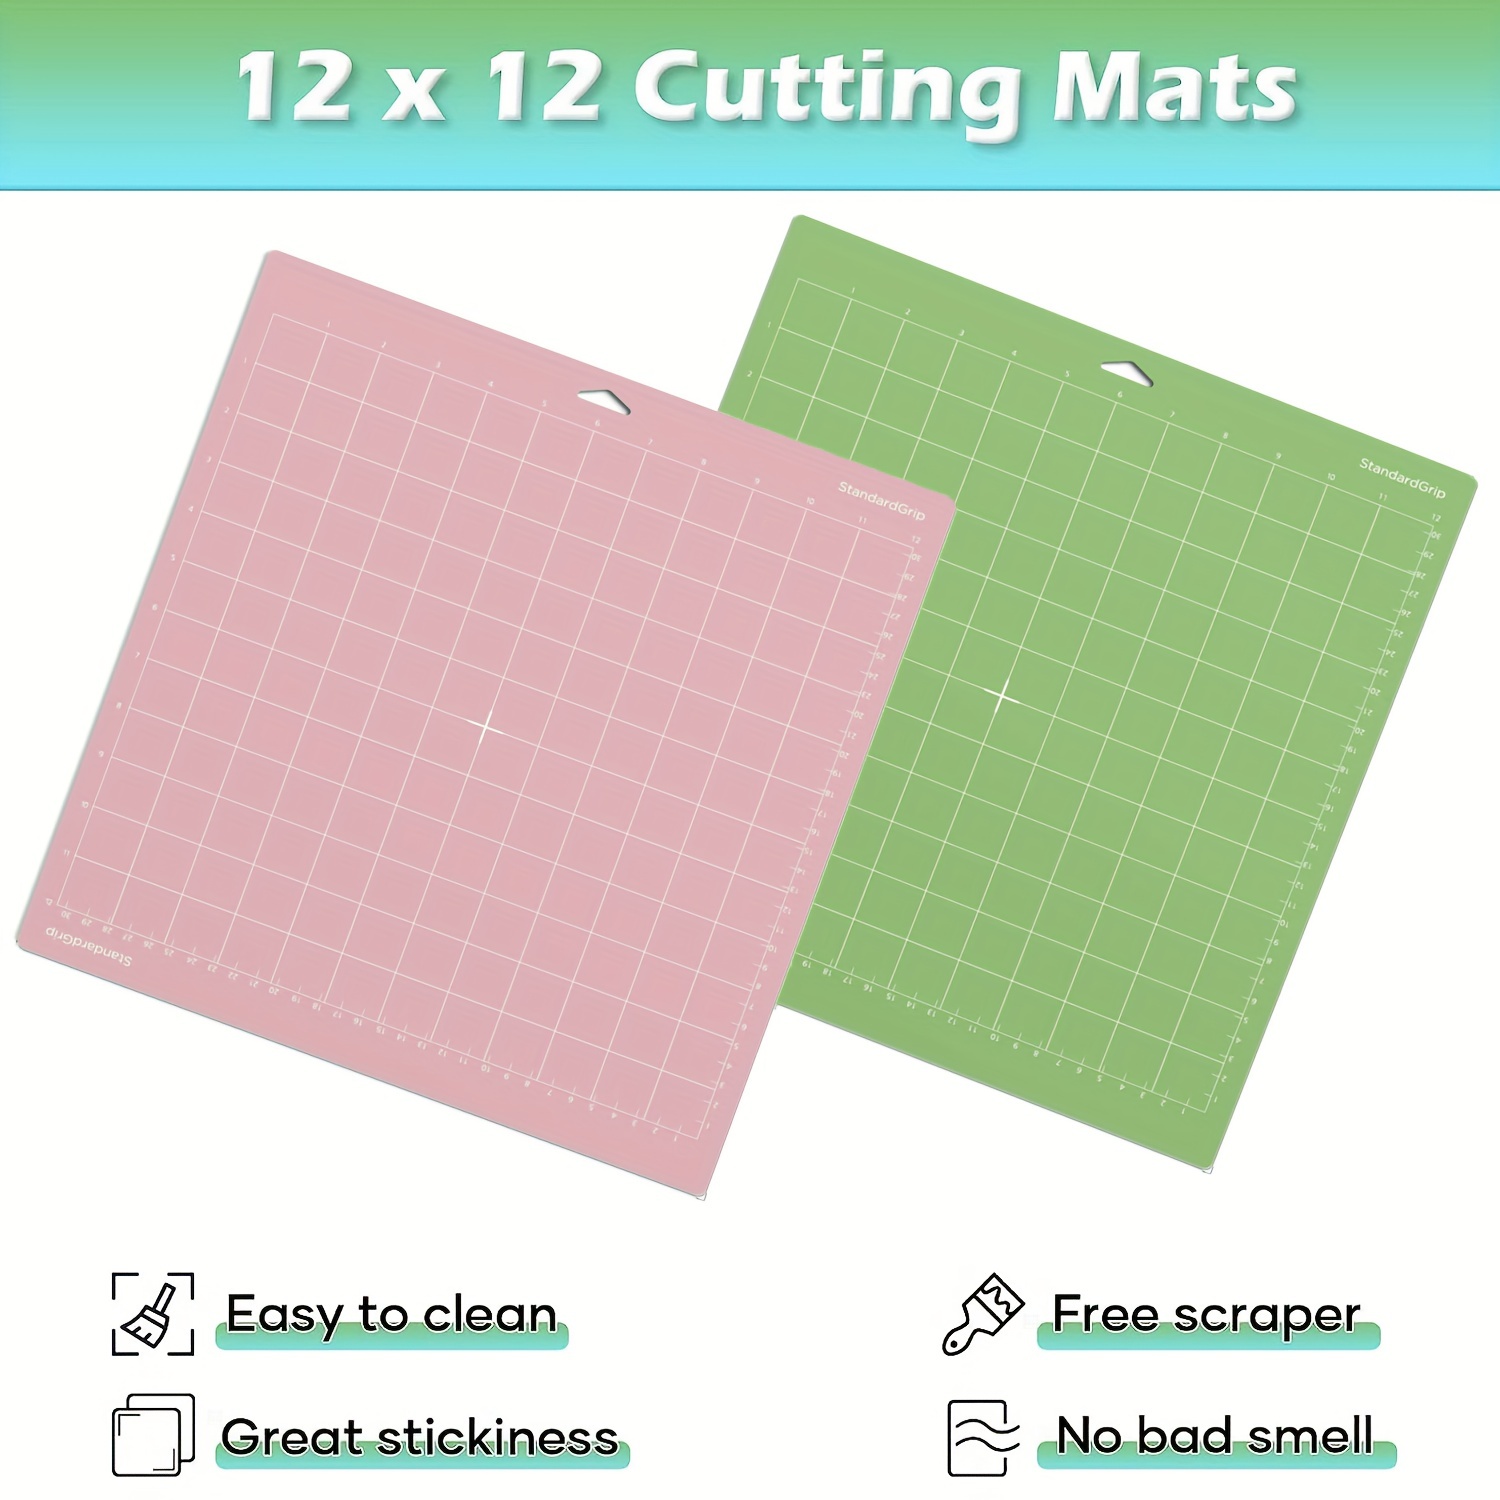 Cricut StandardGrip Cutting Mat 12 x 12 Inches